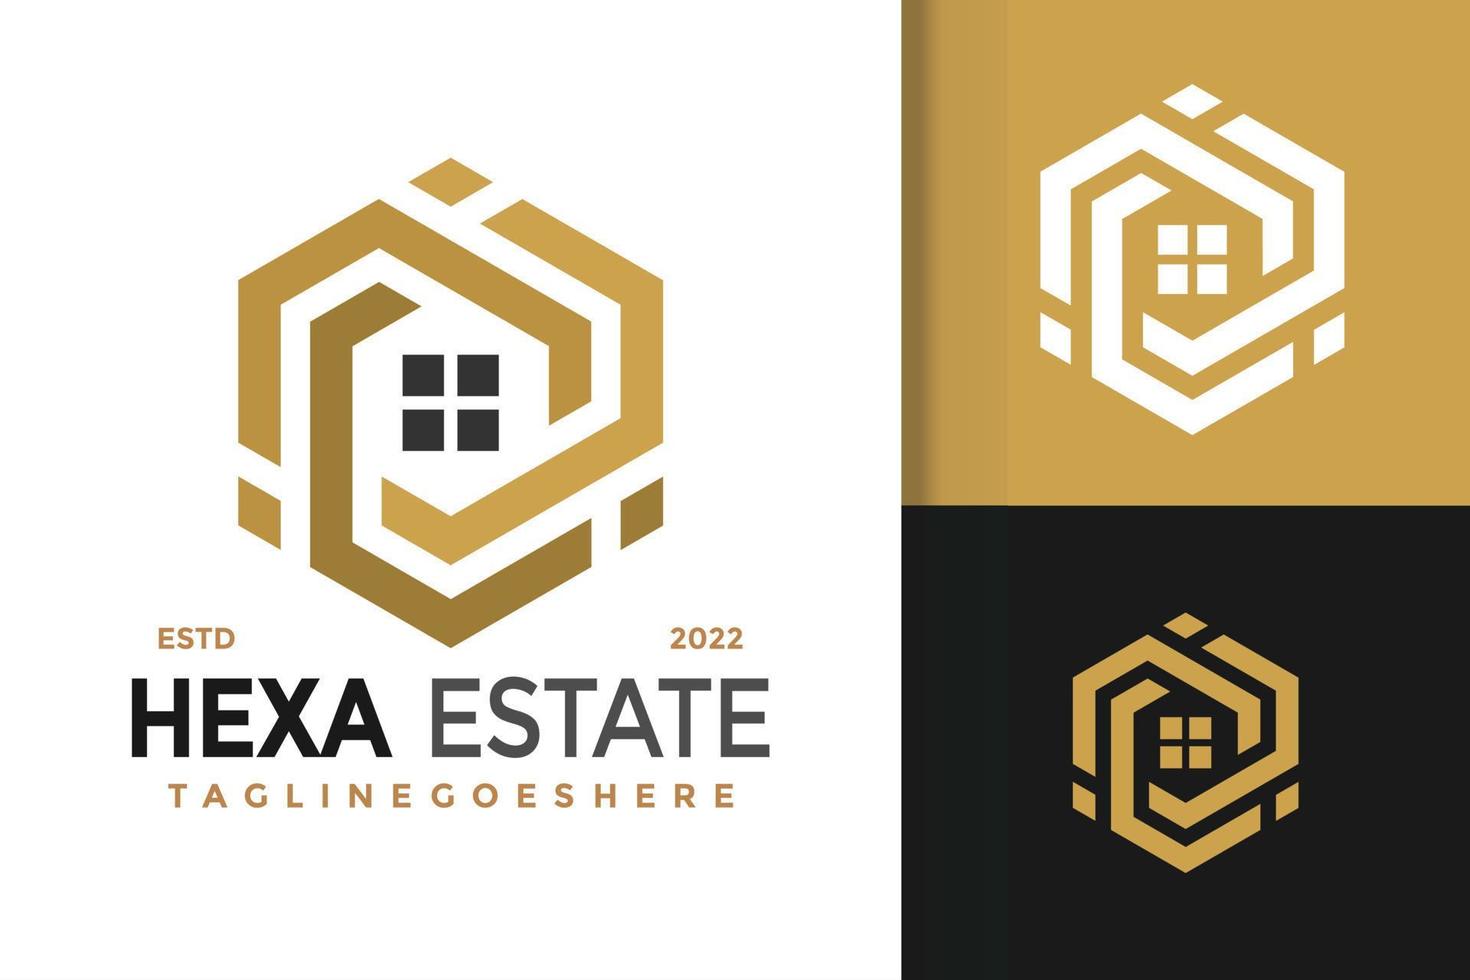 création de logo immobilier hexagonal, vecteur de logos d'identité de marque, logo moderne, modèle d'illustration vectorielle de conceptions de logo